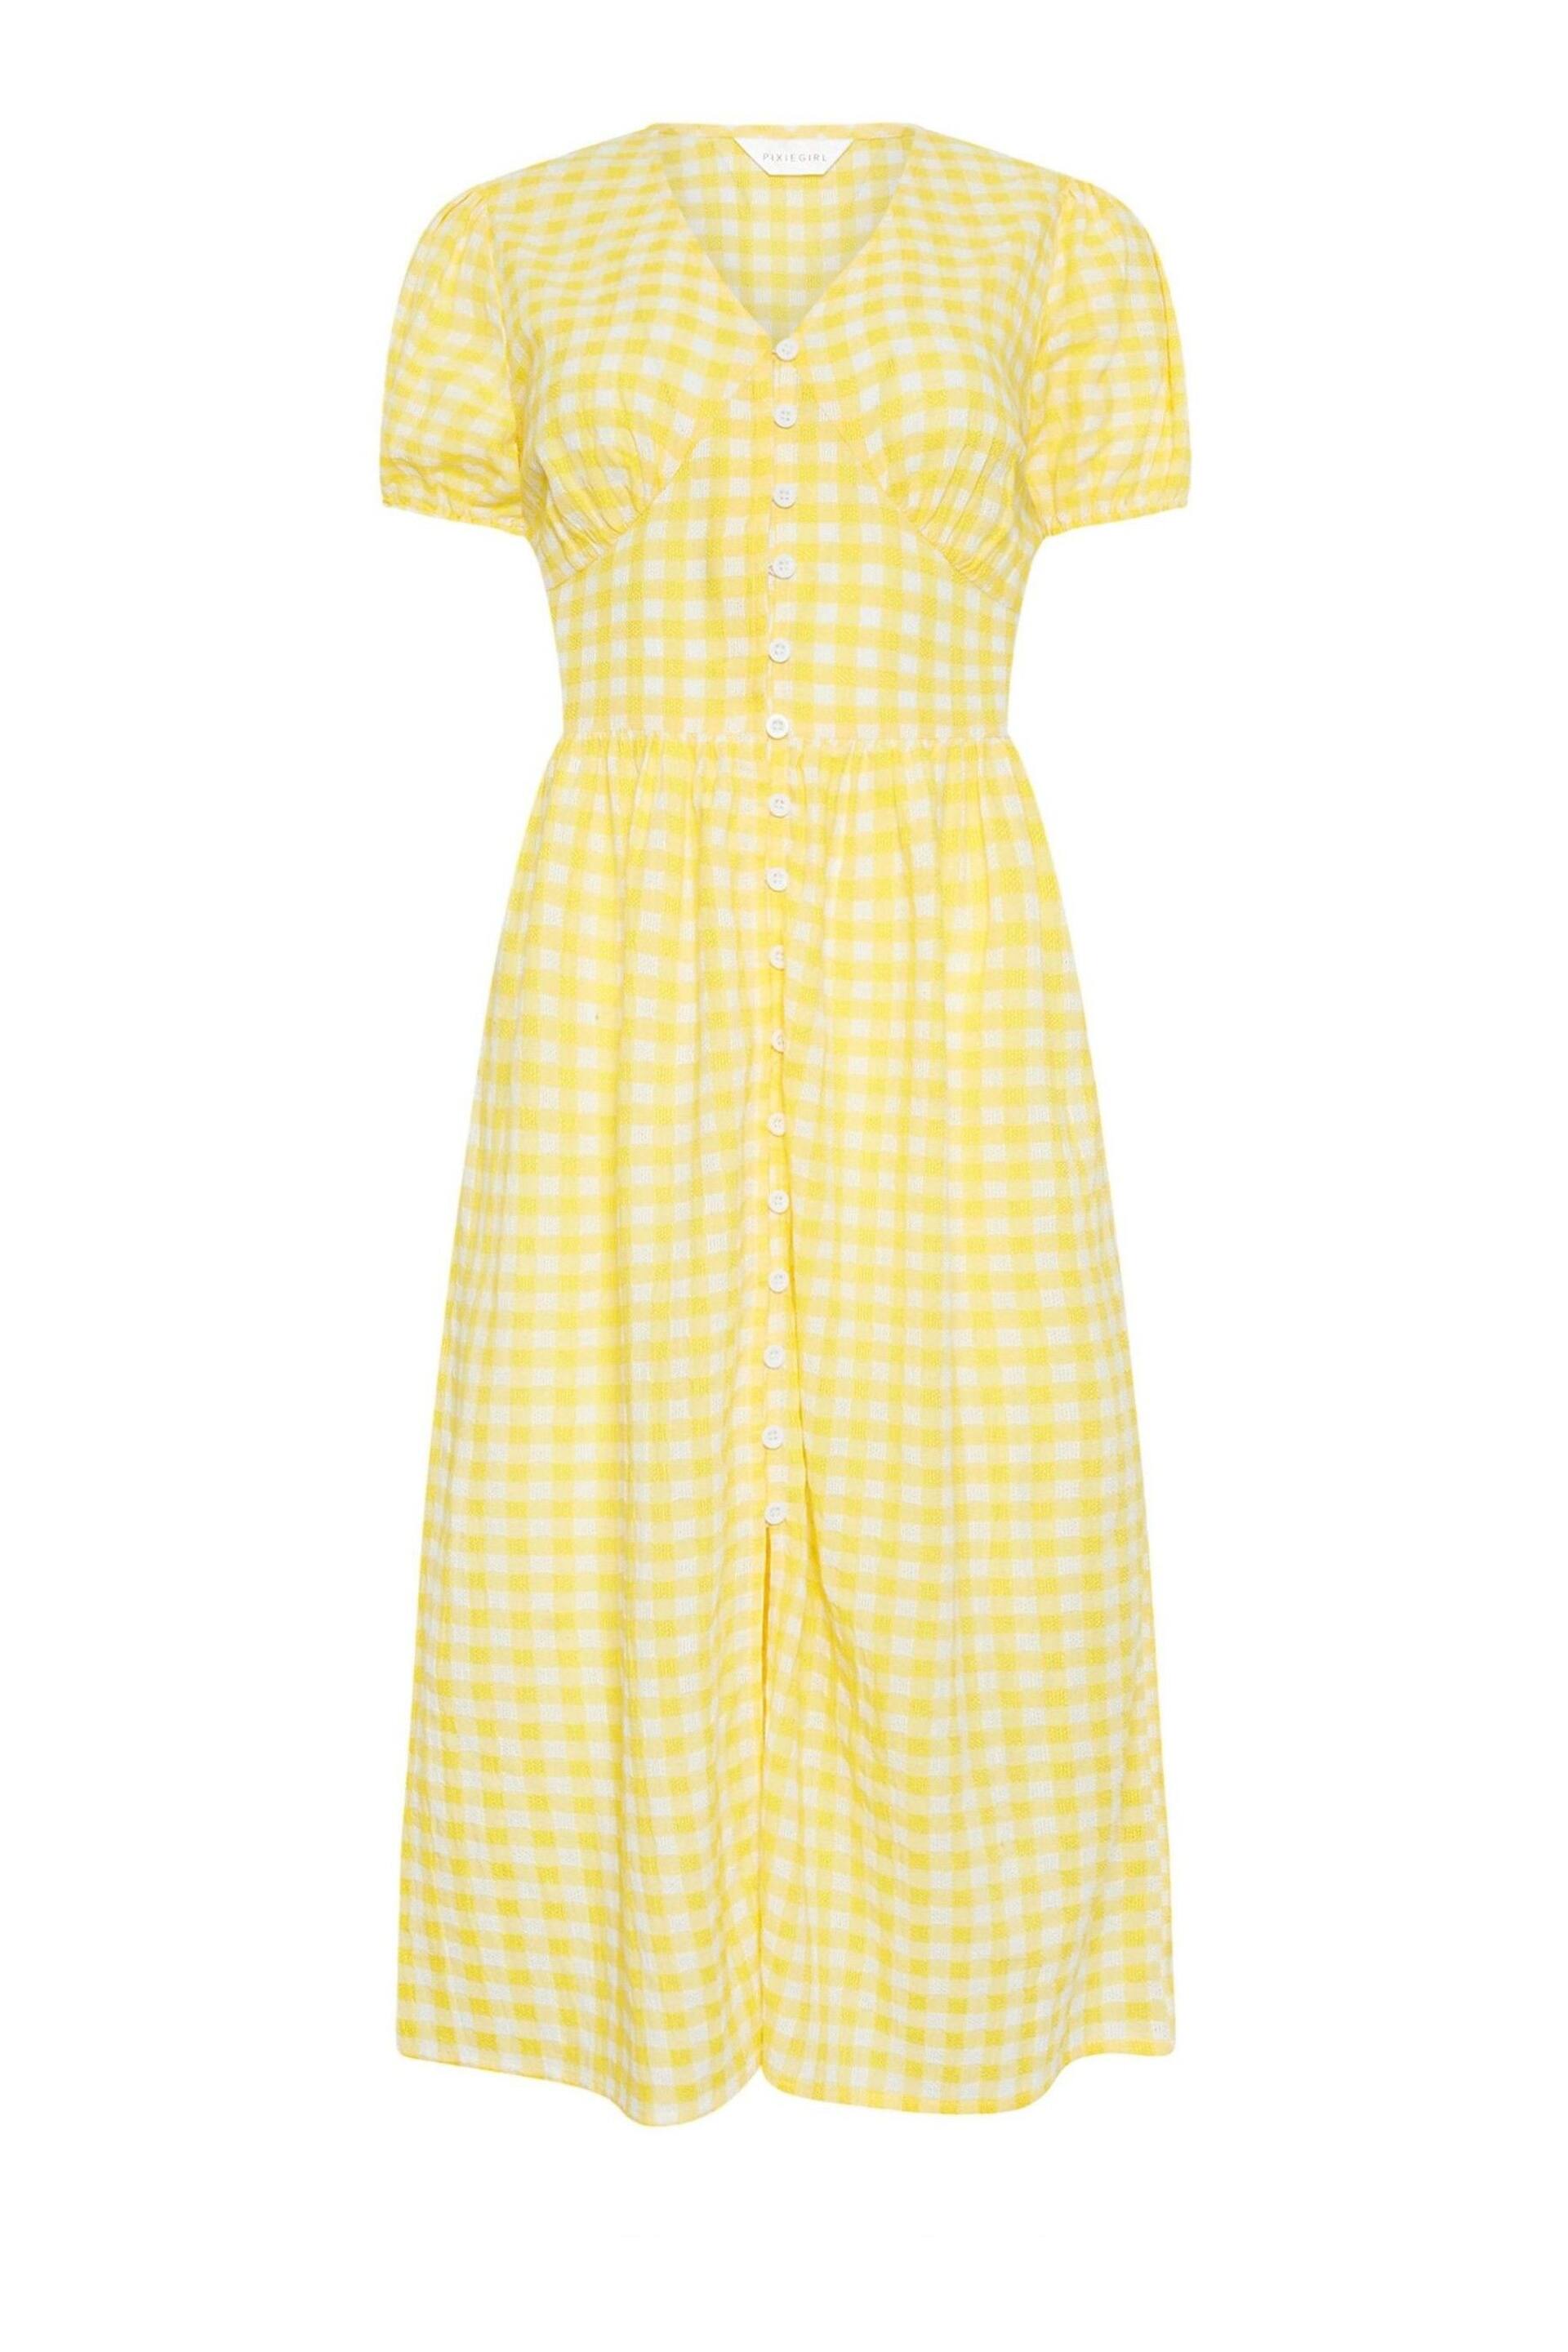 PixieGirl Petite Yellow Yellow Gingham Print Button Through Midi Dress - Image 5 of 5